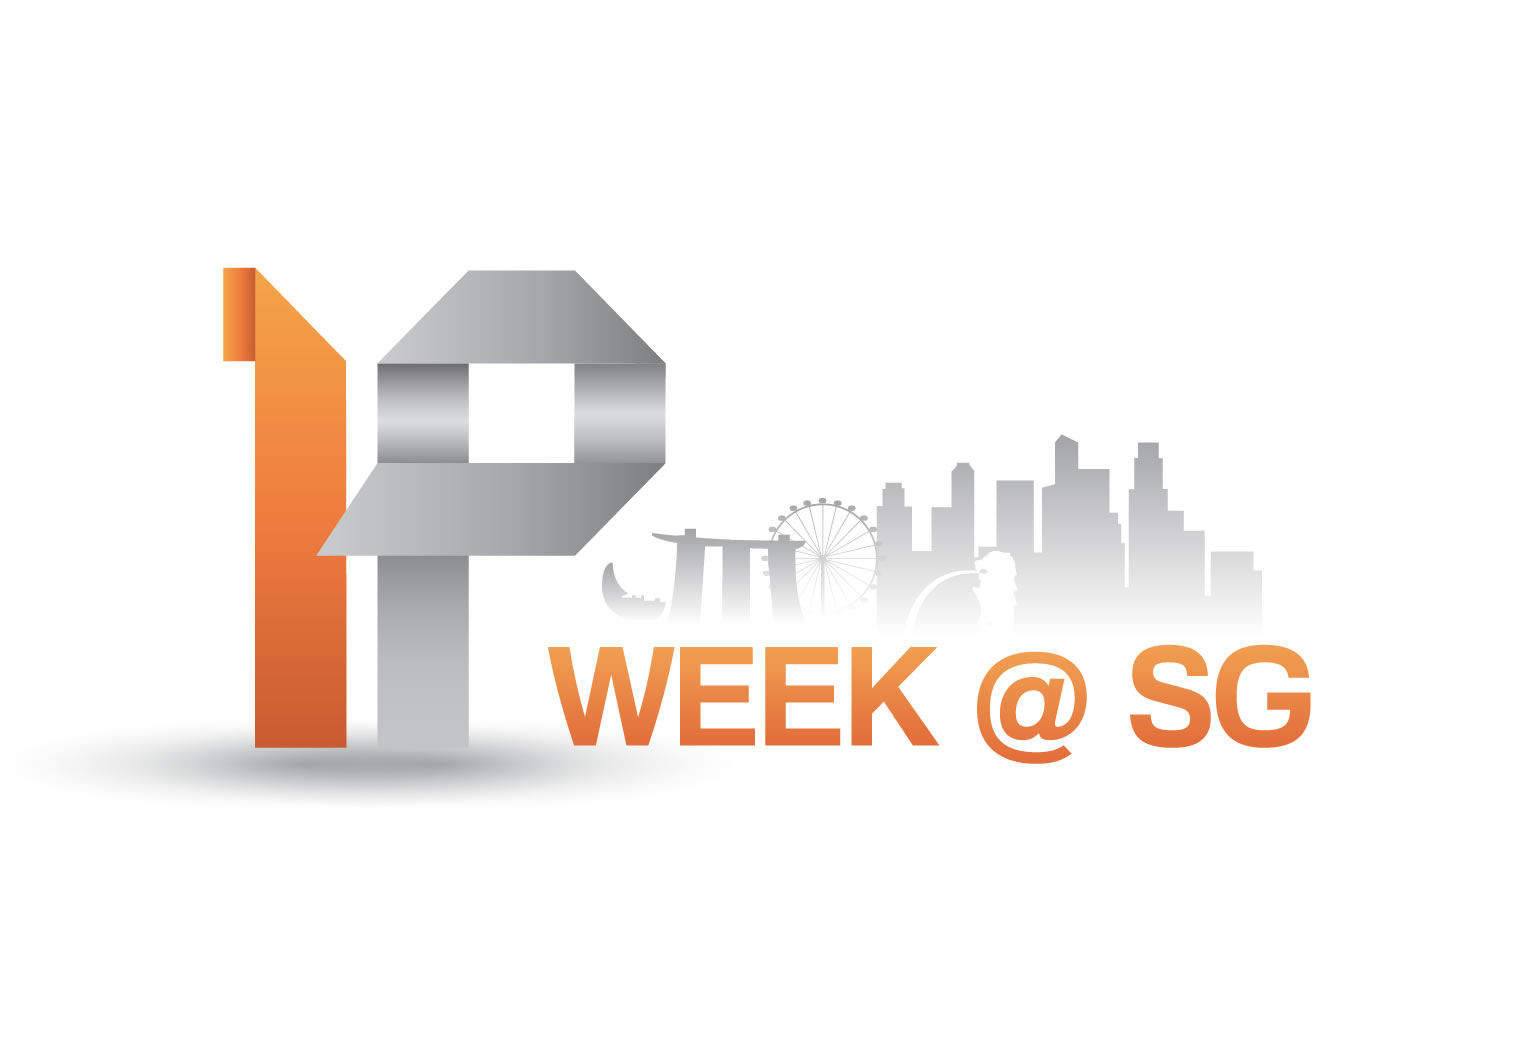 IP Week @ SG 2014 To Be Held in Singapore